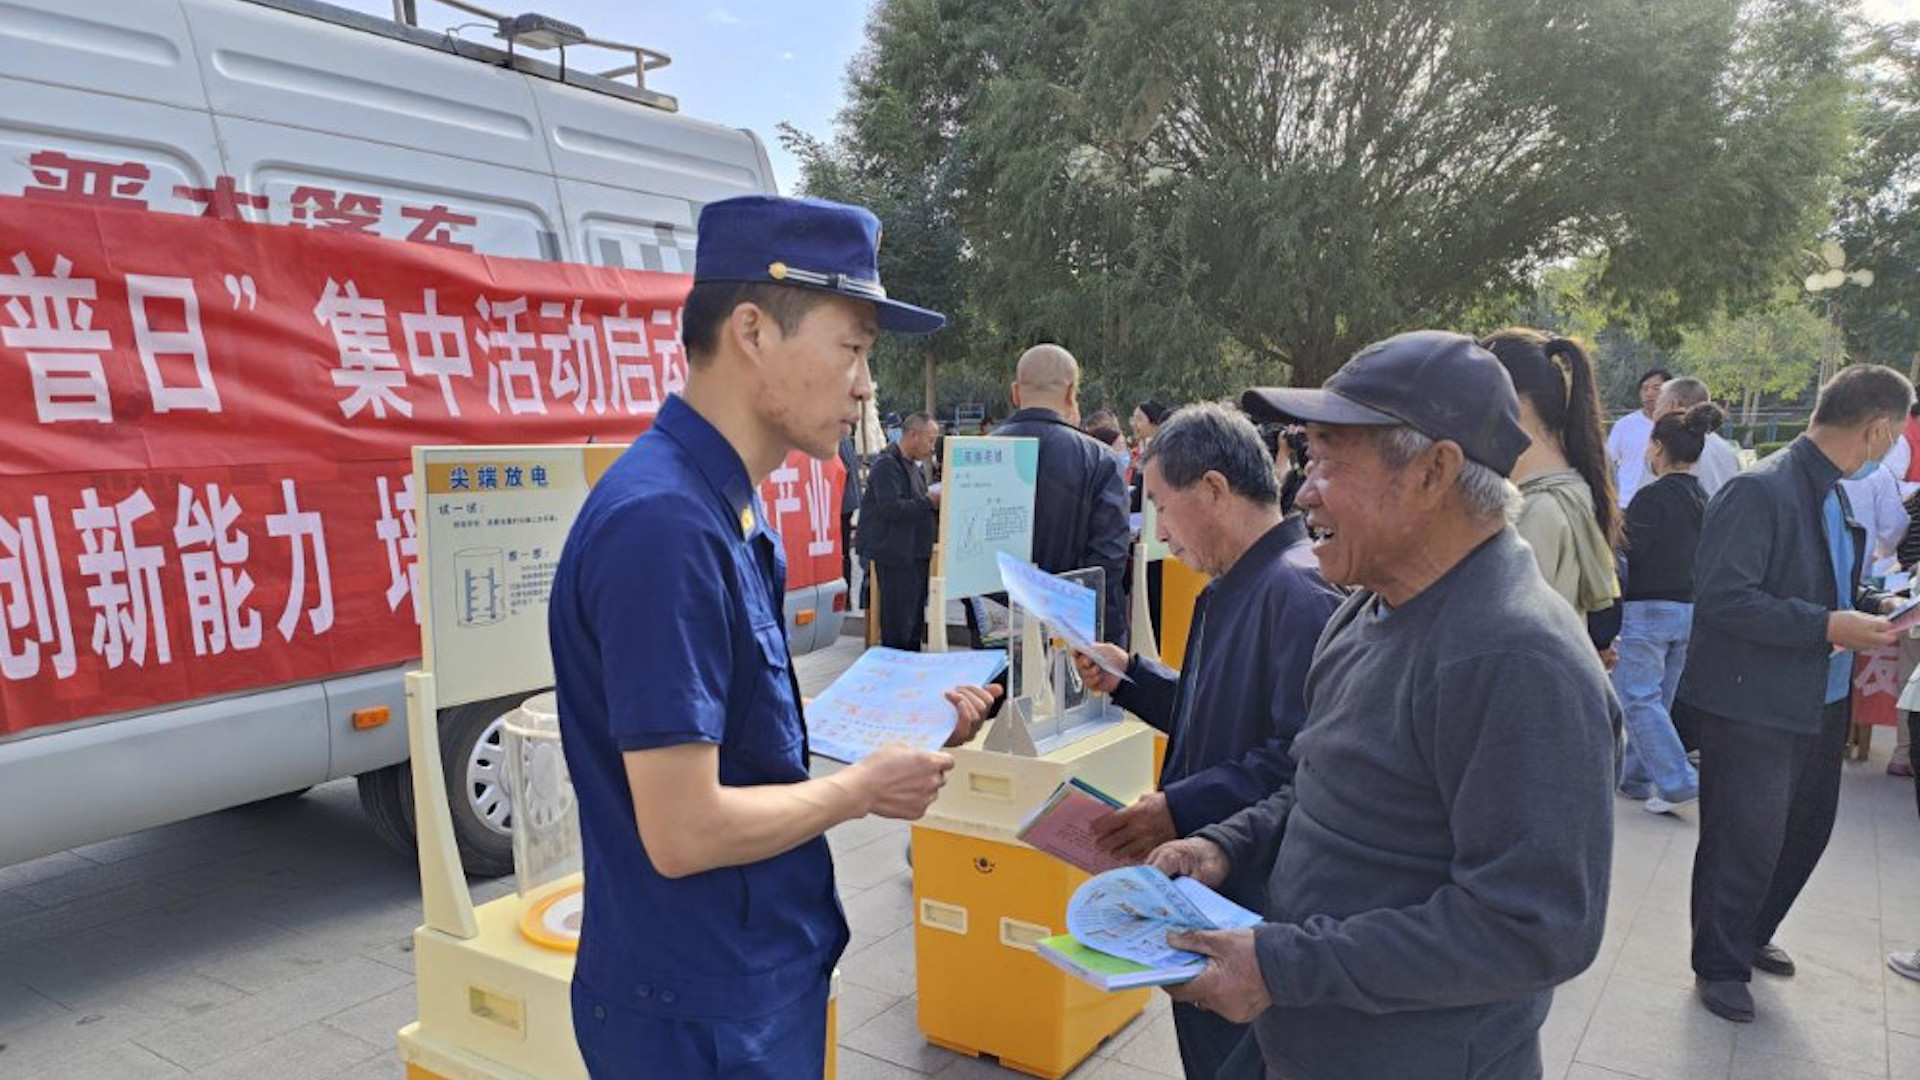 Hoạt động tuyên truyền phòng cháy, chữa cháy ở huyện Dân Cần, thành phố Vũ Uy, tỉnh Cam Túc, Trung Quốc (Ảnh: Tân Hoa Xã)